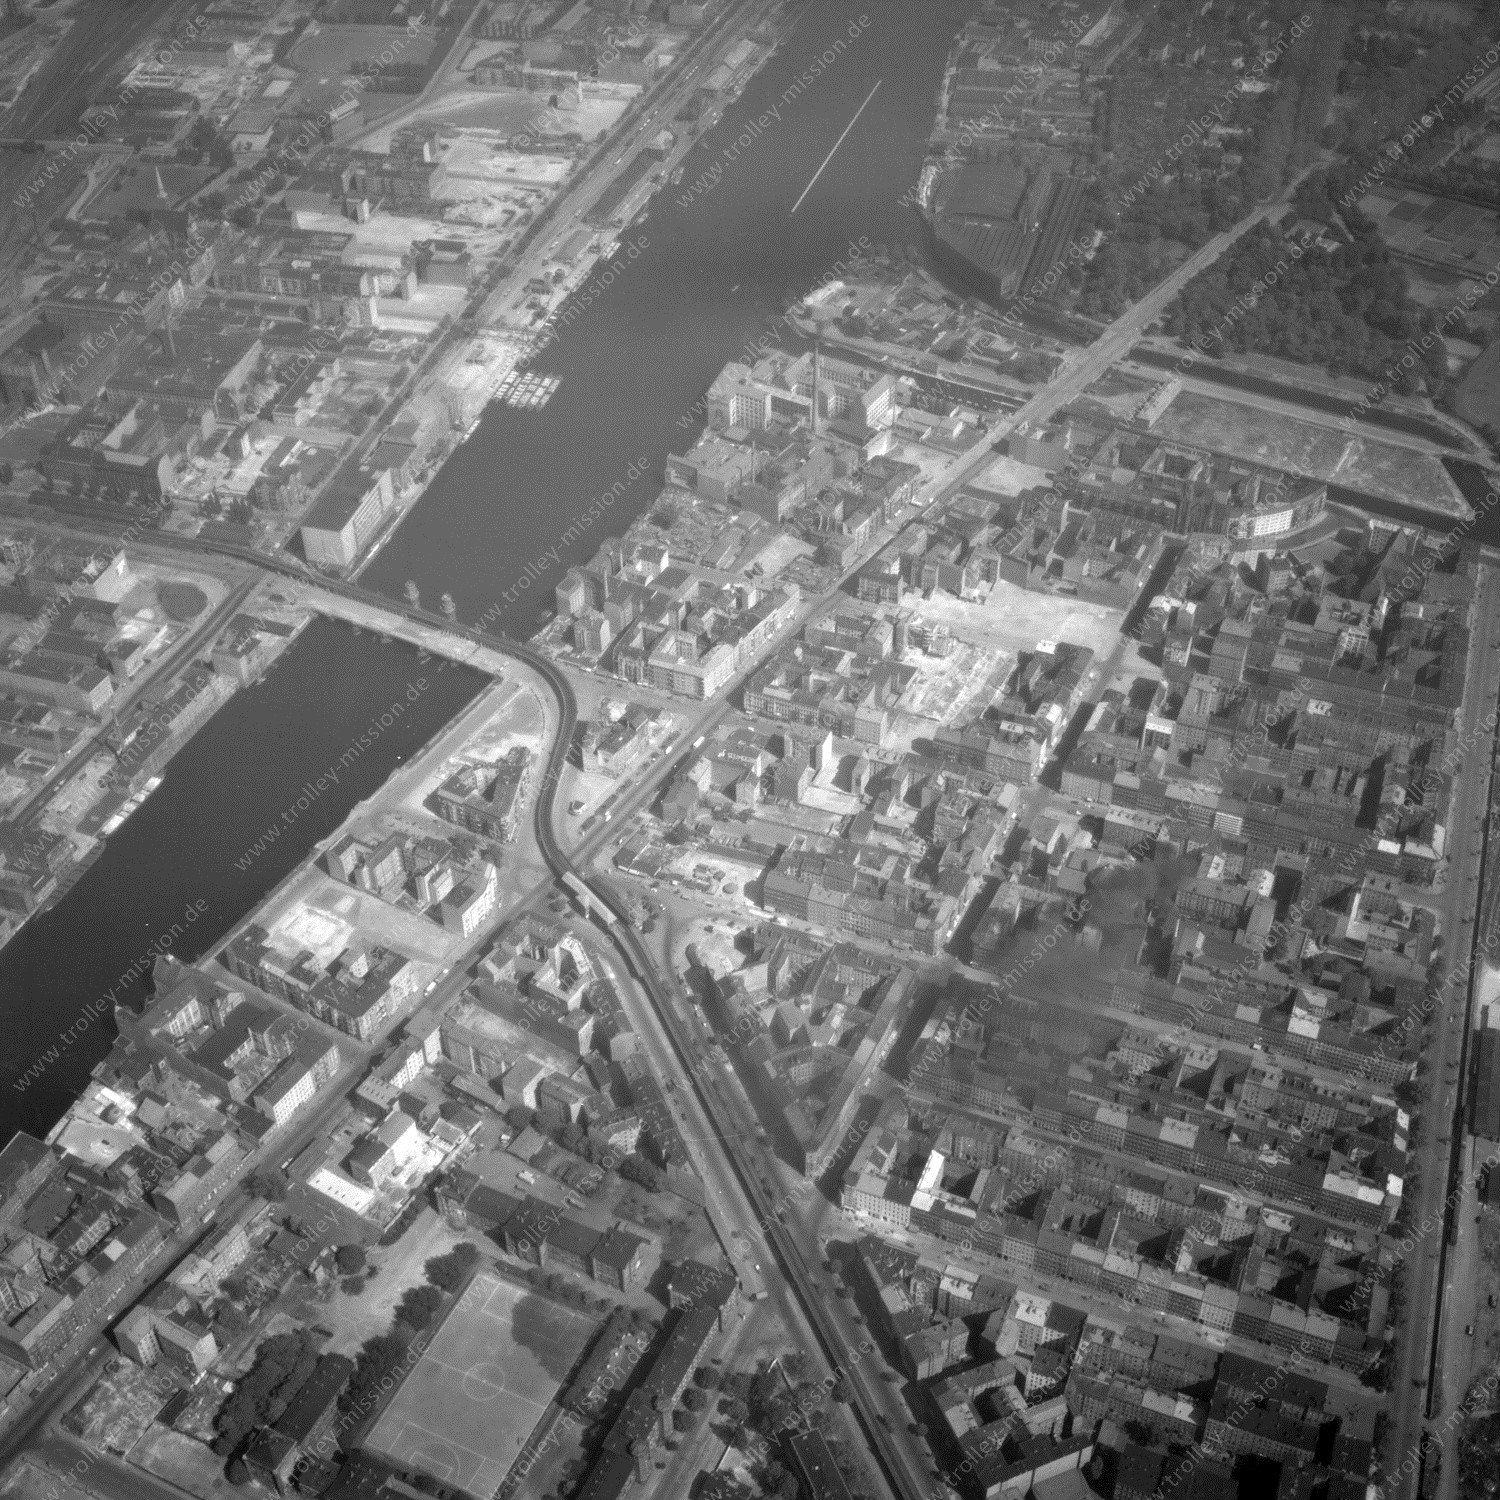 Alte Fotos und Luftbilder von Berlin - Luftbildaufnahme Nr. 06 - Historische Luftaufnahmen von West-Berlin aus dem Jahr 1954 - Flugstrecke November